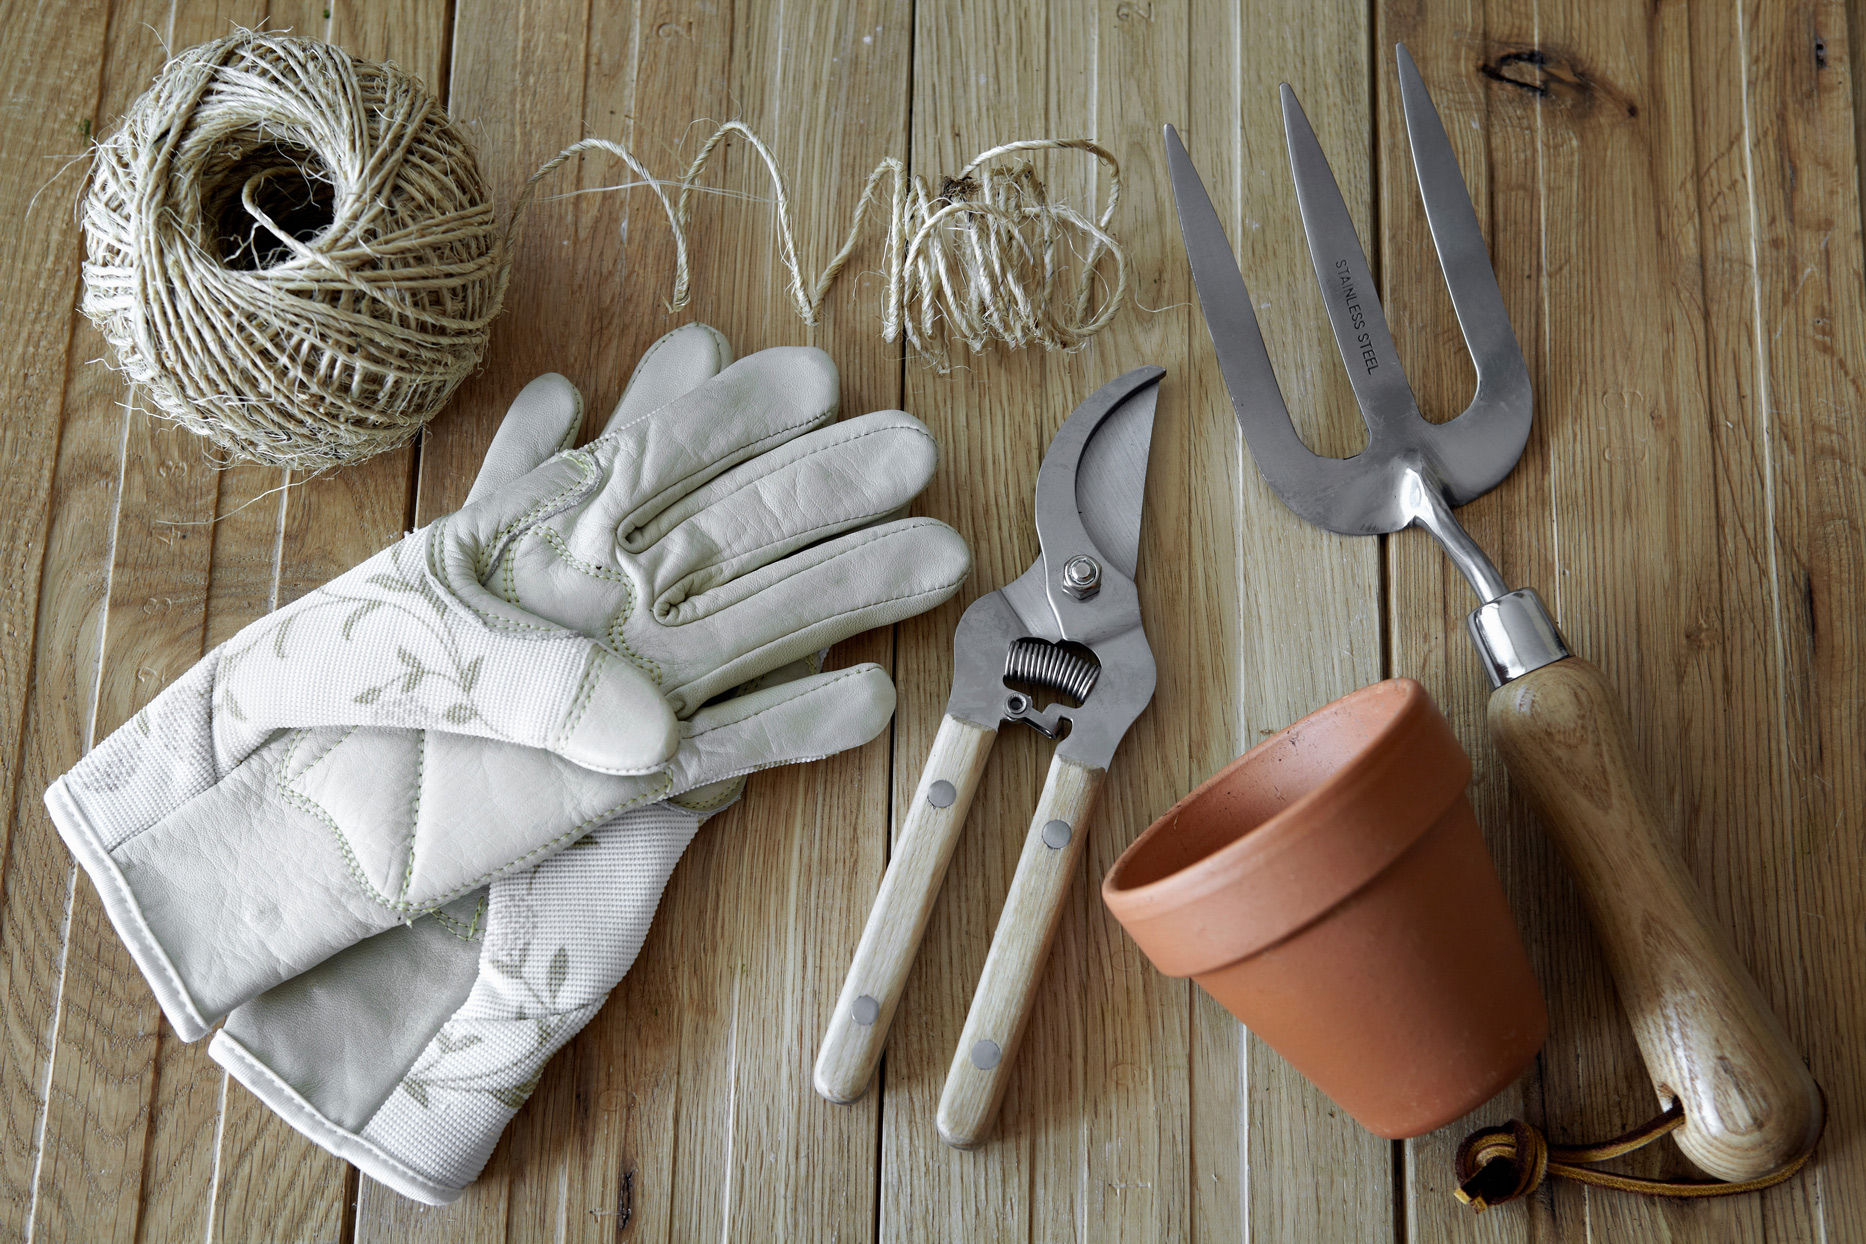 Explore the Best Gardening Tool Brands